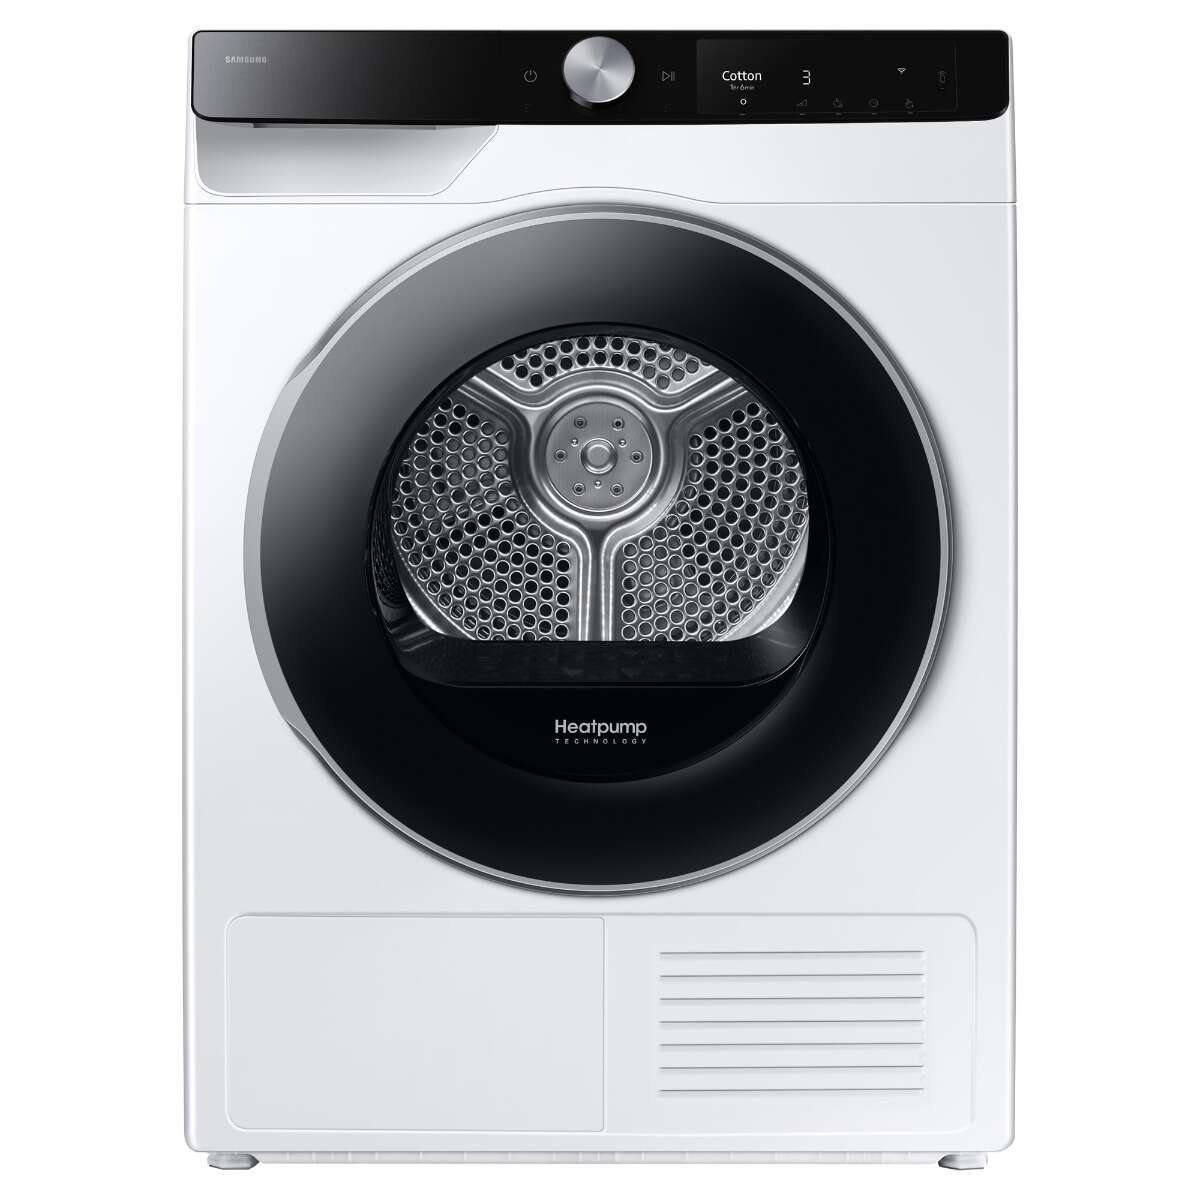 Samsung dv90t6240lk/s6 9 kg, optimaldry, air wash fehér-fekete sz...